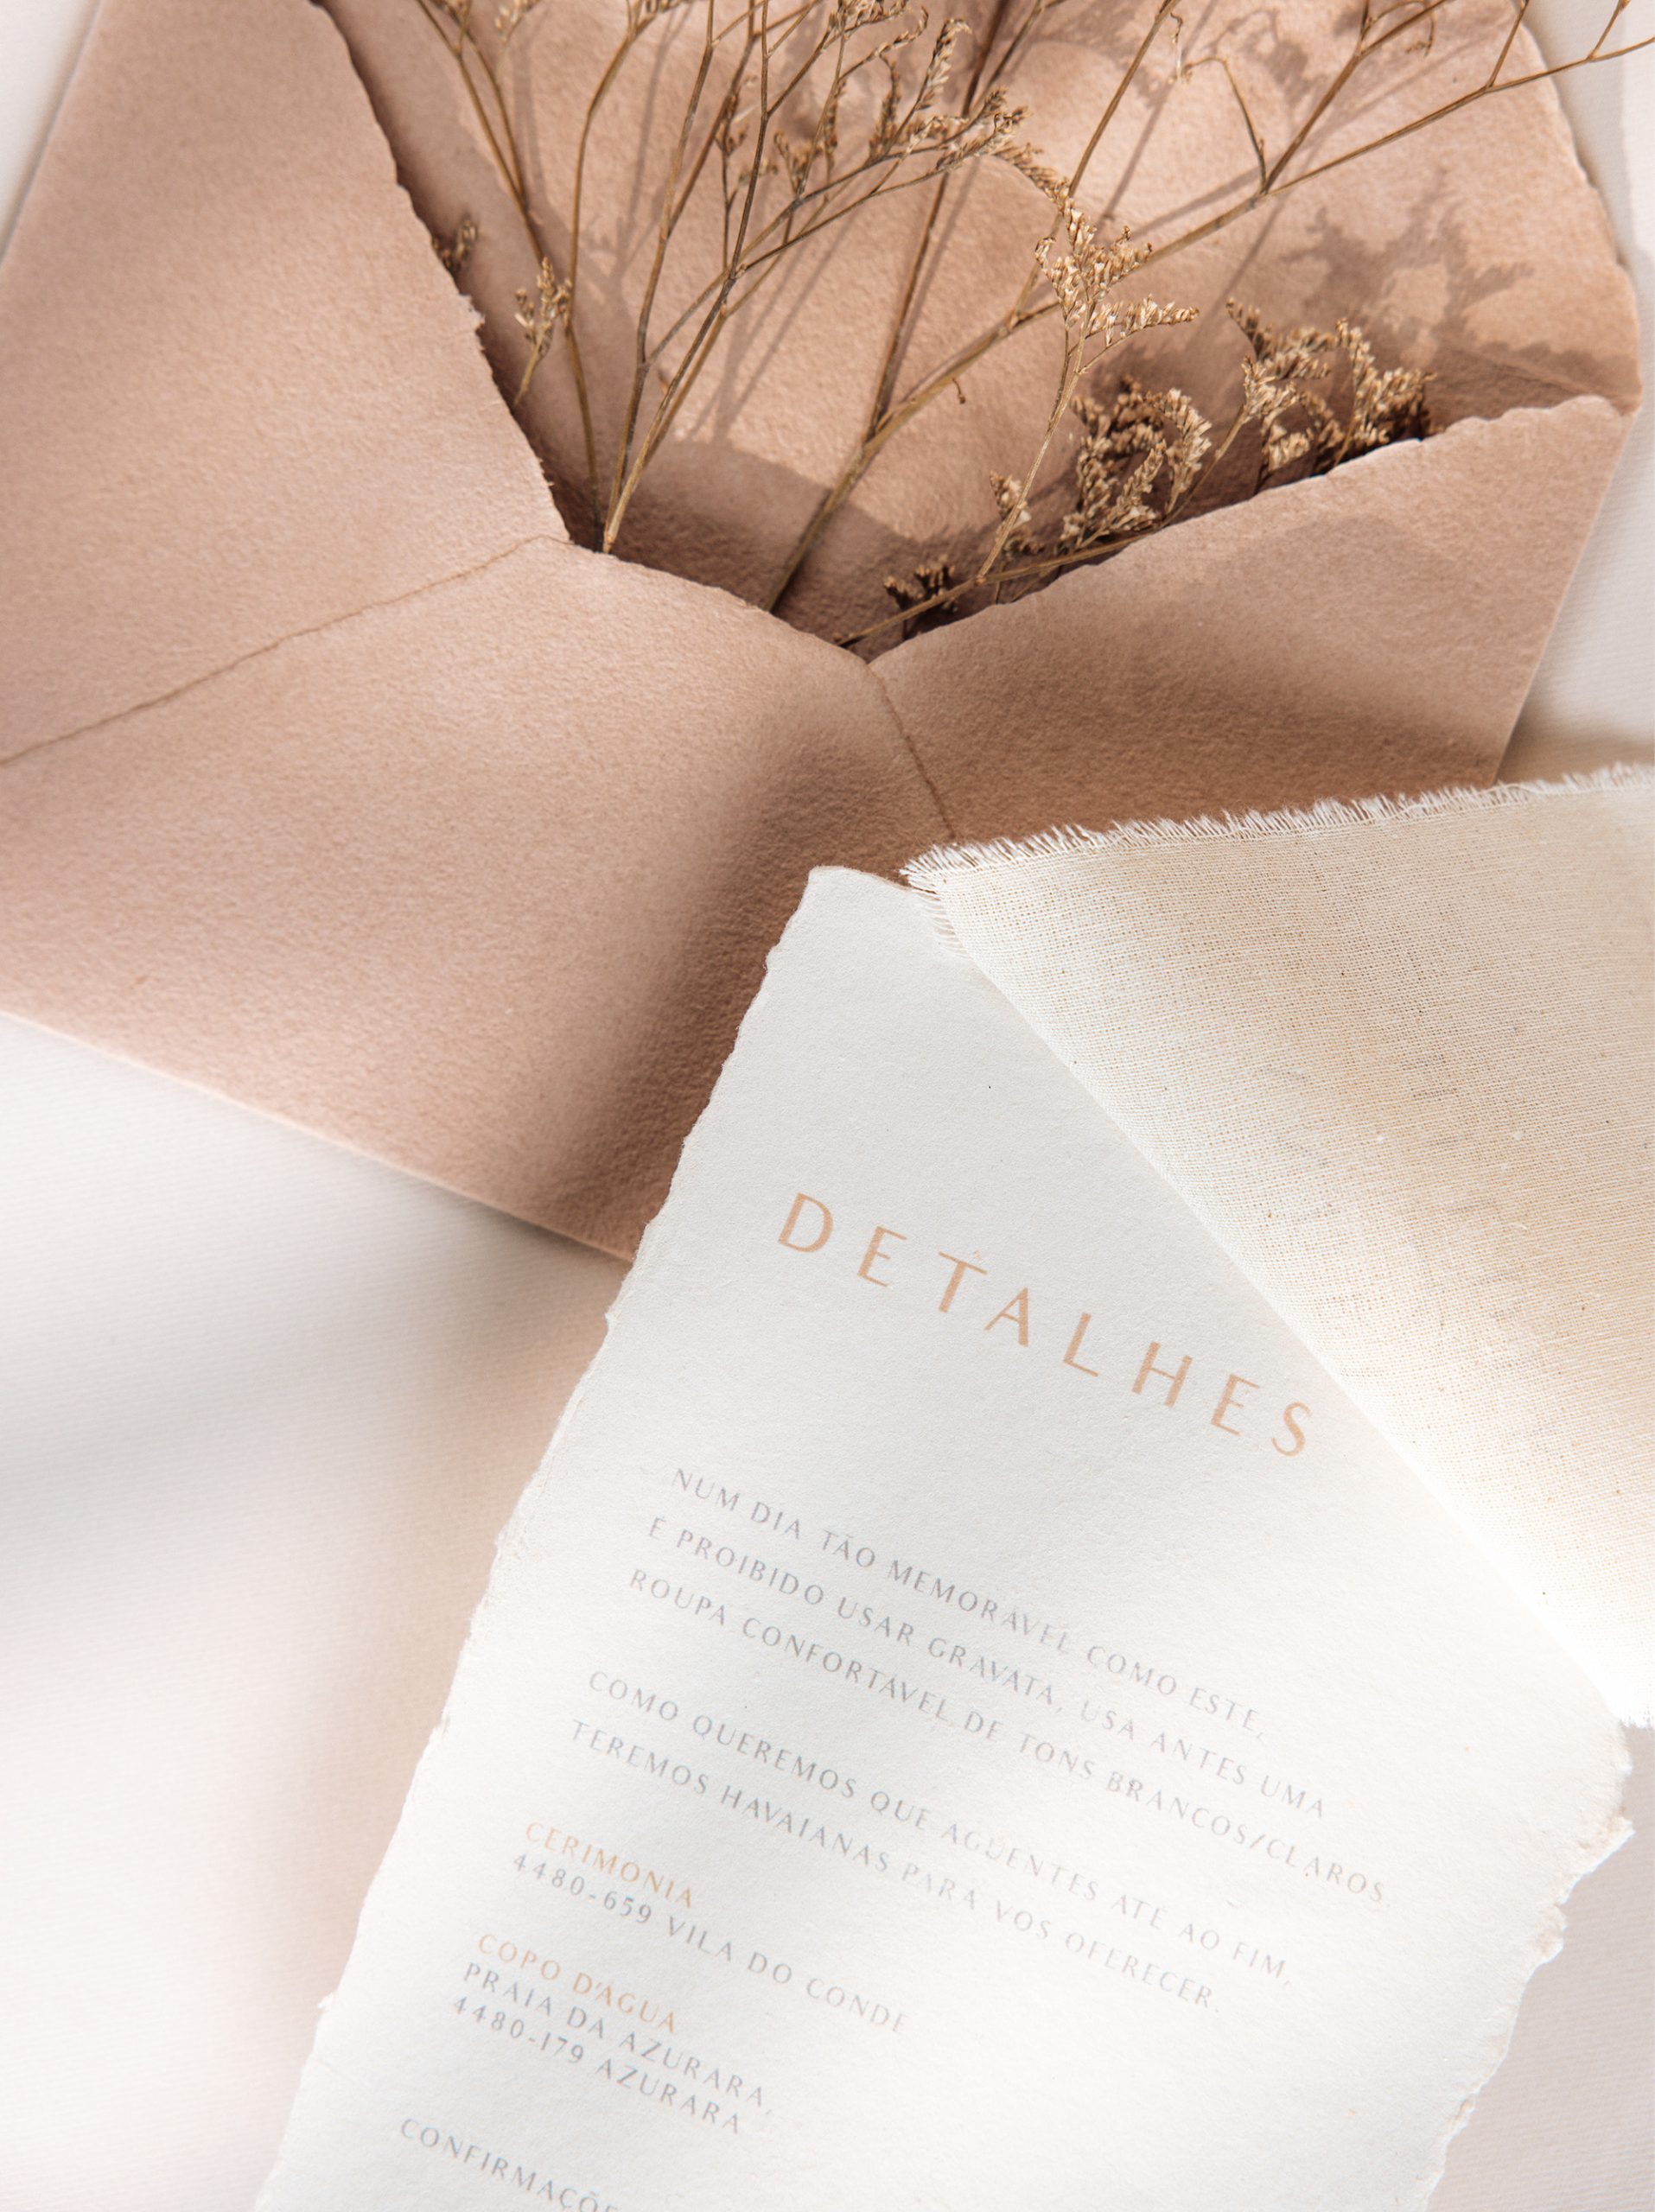 Convite de Casamento e marcador de lugar em papel algodão com efeito rasgado e envelope com efeito rasgado